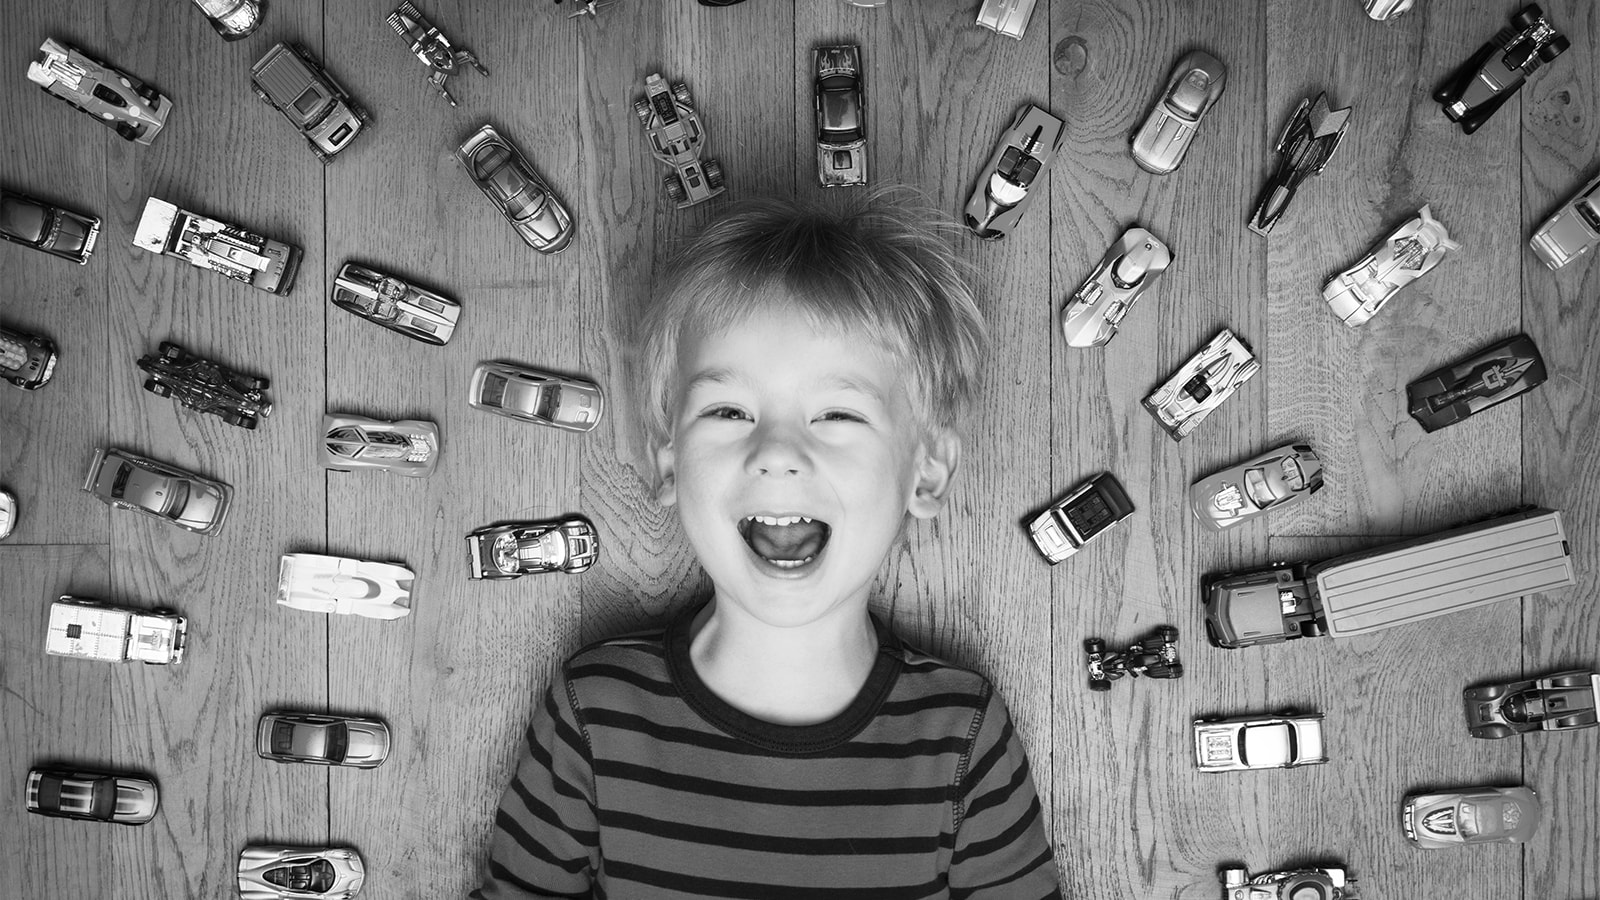 En dreng ligger på gulvet omgivet af legetøjsbiler og smiler stort